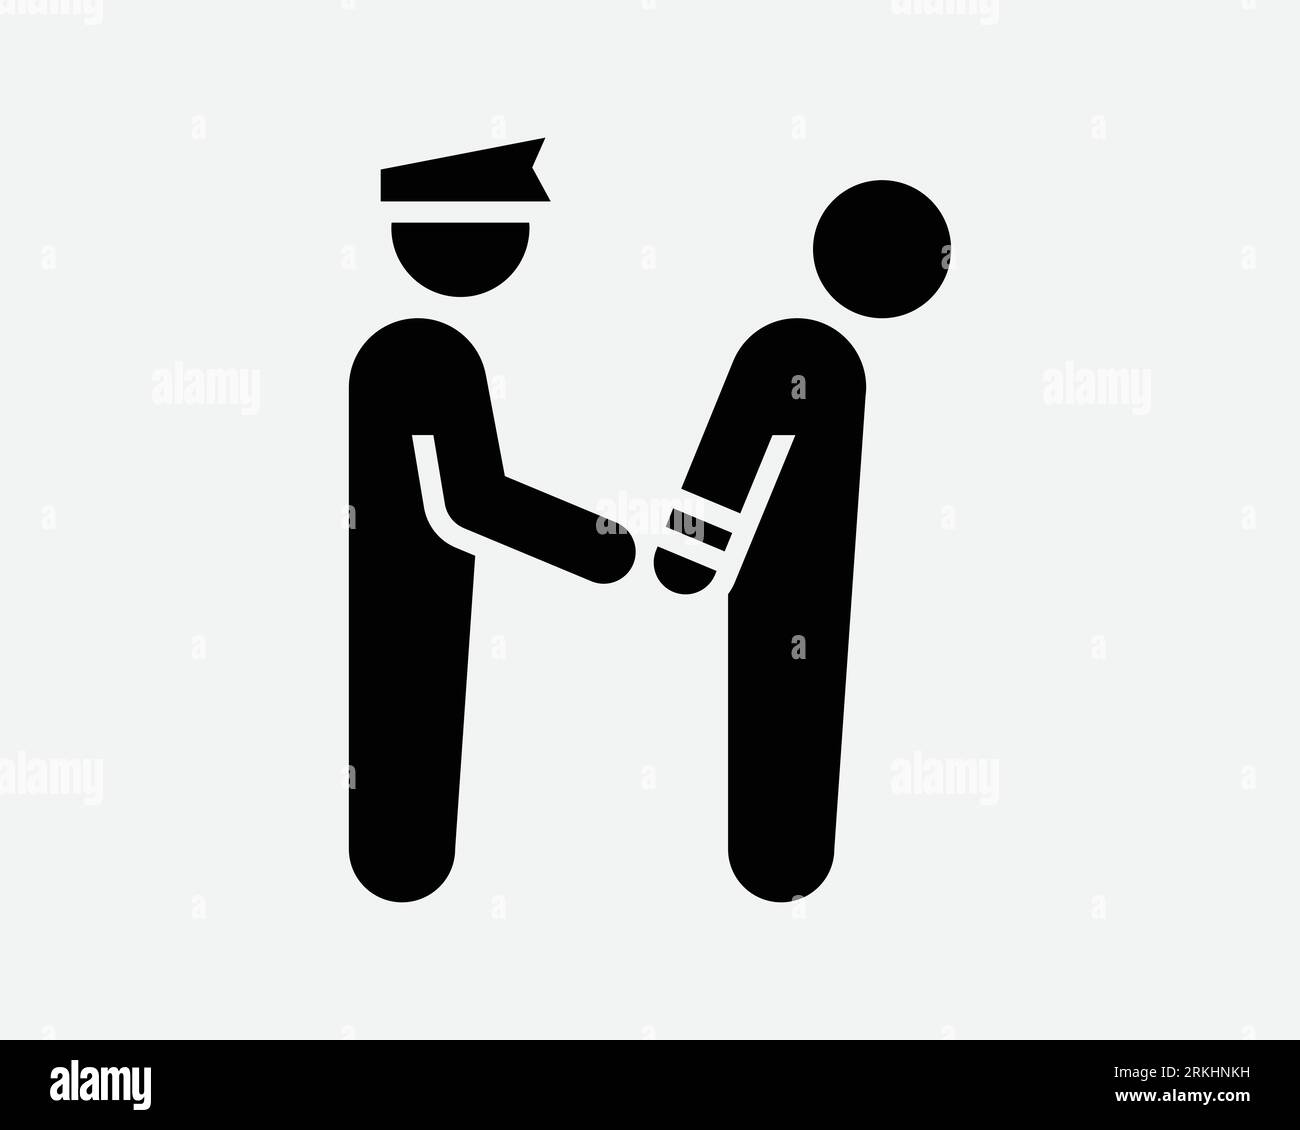 Icona di arresto Convict Prisoner Arrested Criminal Handcuff ladro polizia carcere sicurezza profilo bianco nero forma Vector Clipart simbolo grafico Illustrazione Vettoriale